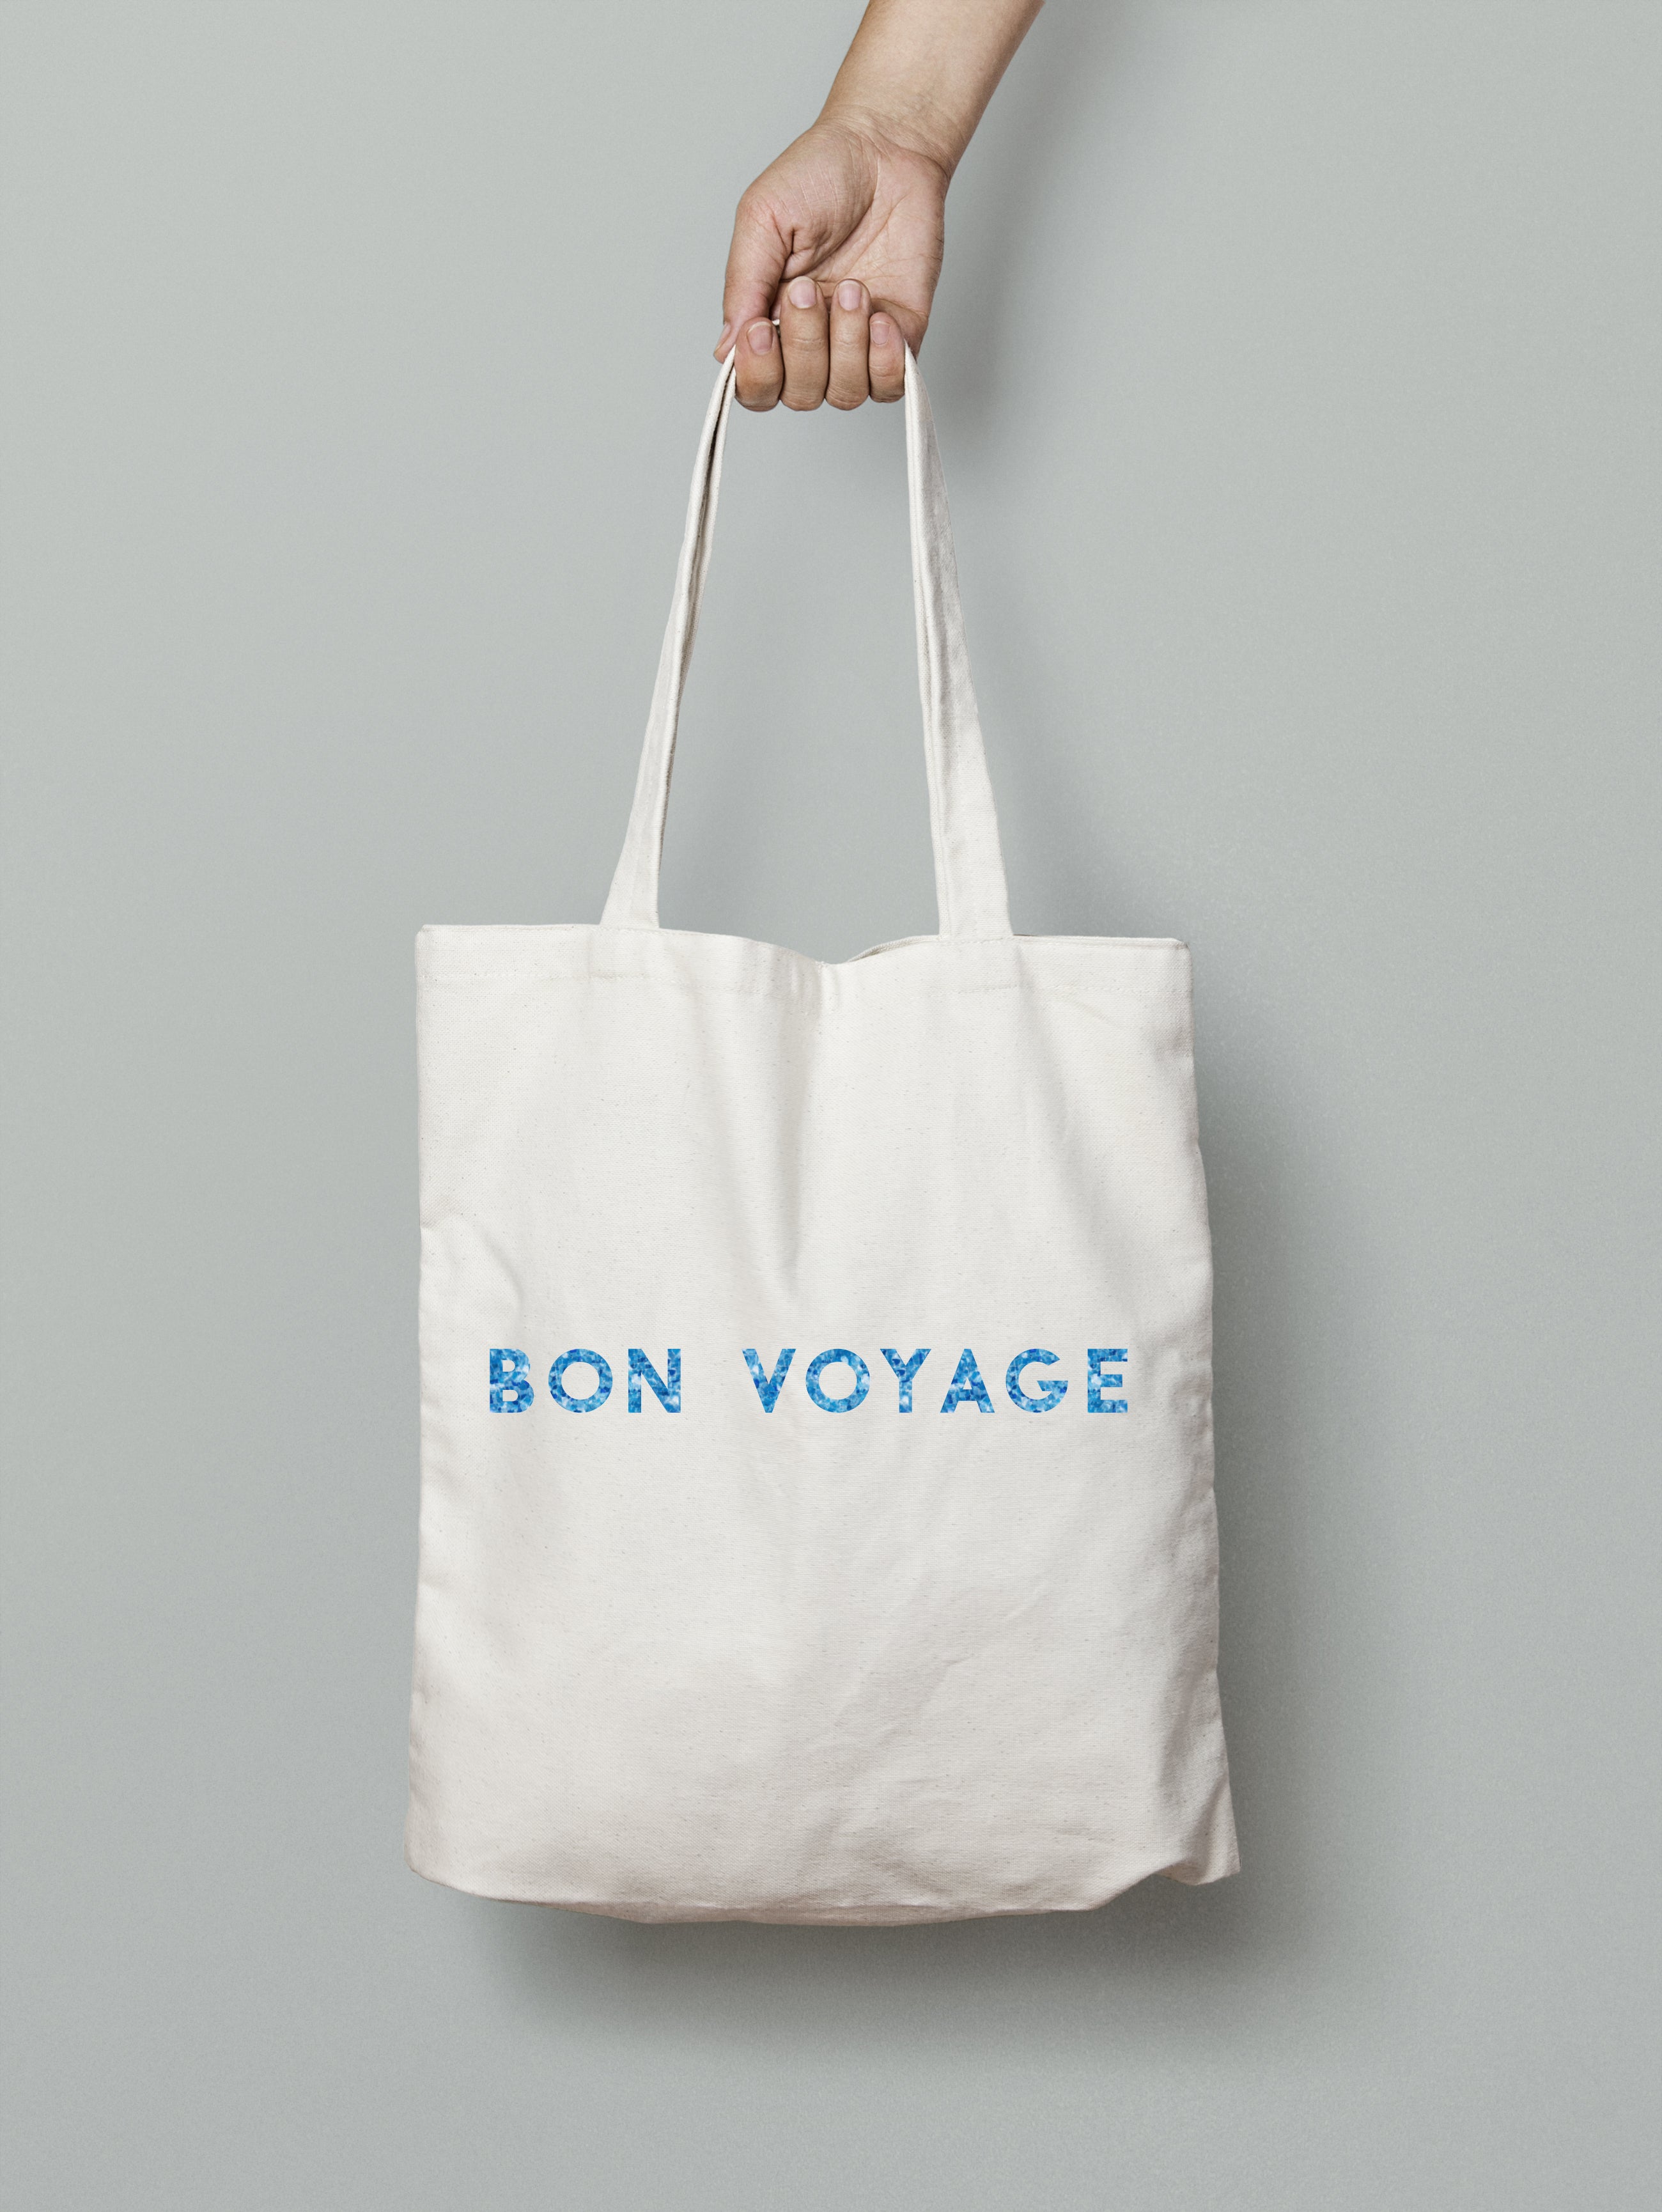 Tote bag "Bon voyage"